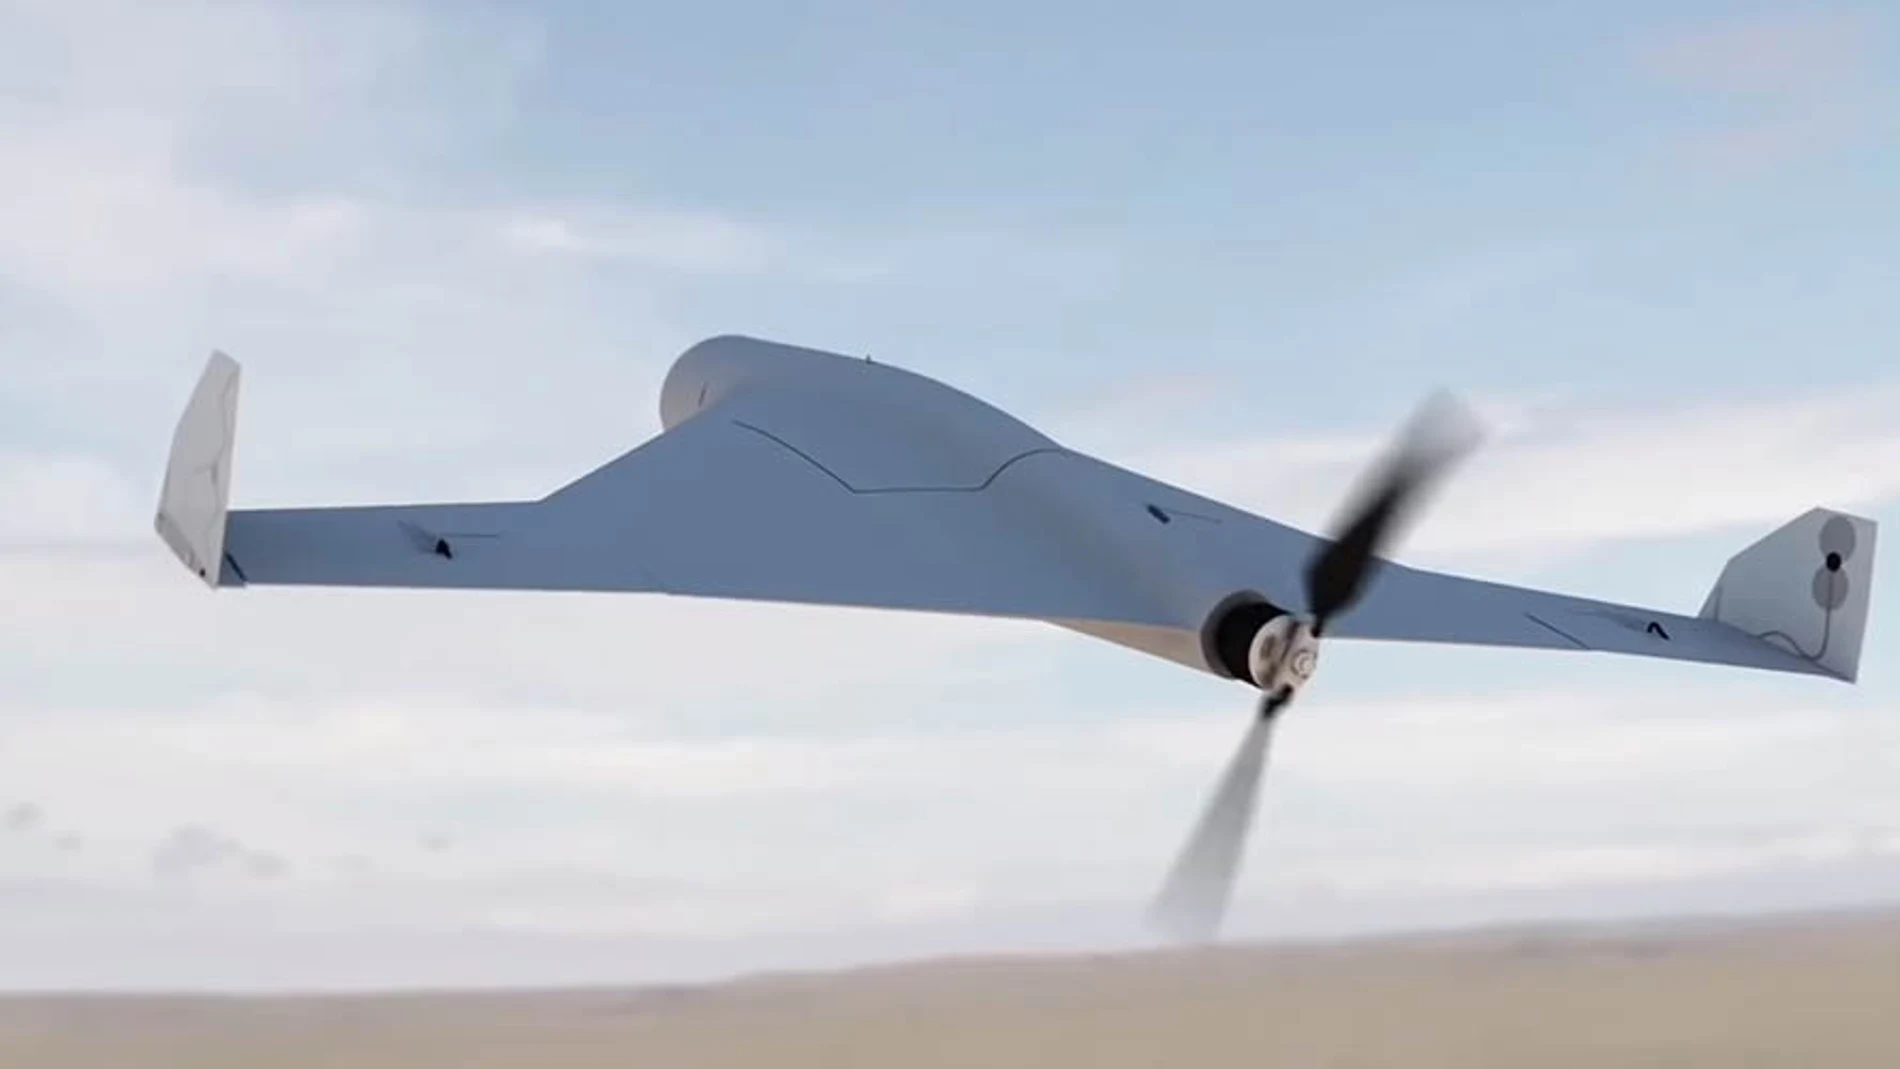 El dron kamikaze de Kalashnikov puede volar a 130 km/h y transportar hasta 3 kg de carga explosiva / YouTube